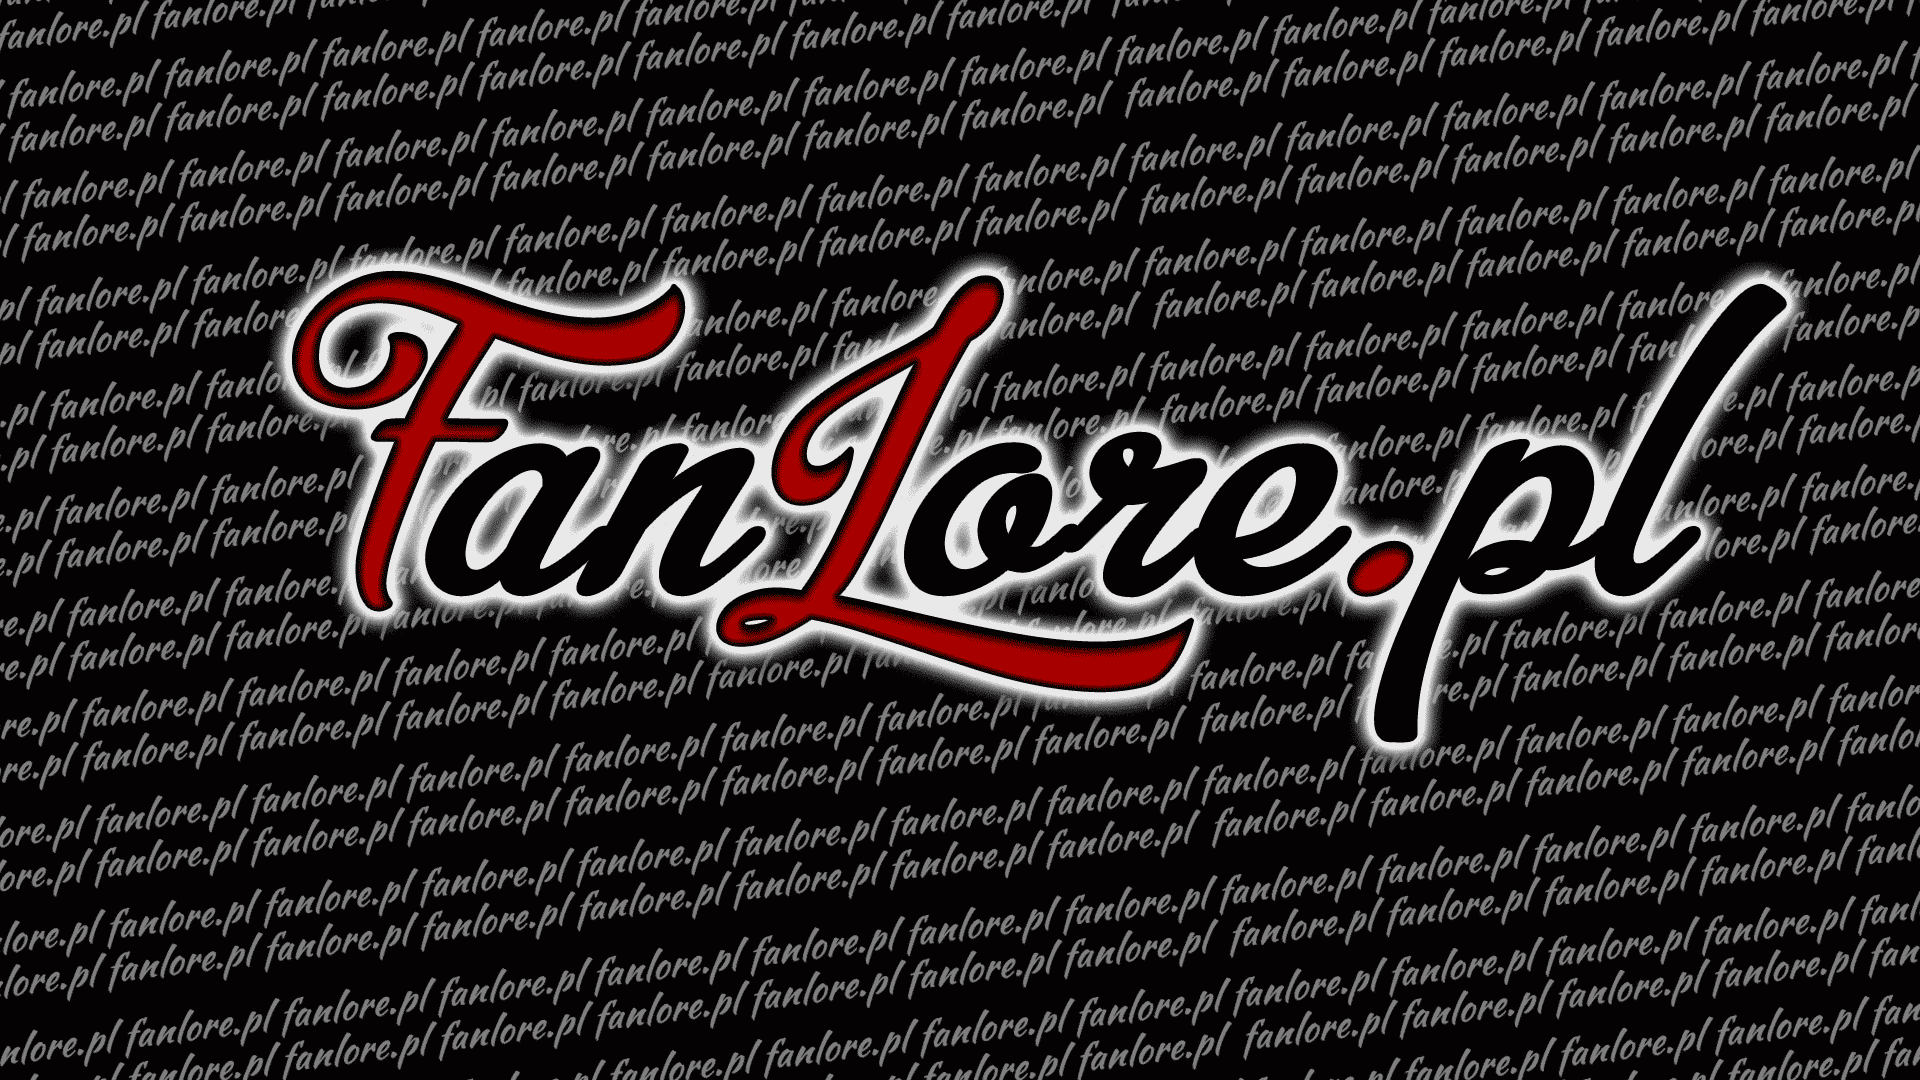 fanlore.pl-pasty-banner